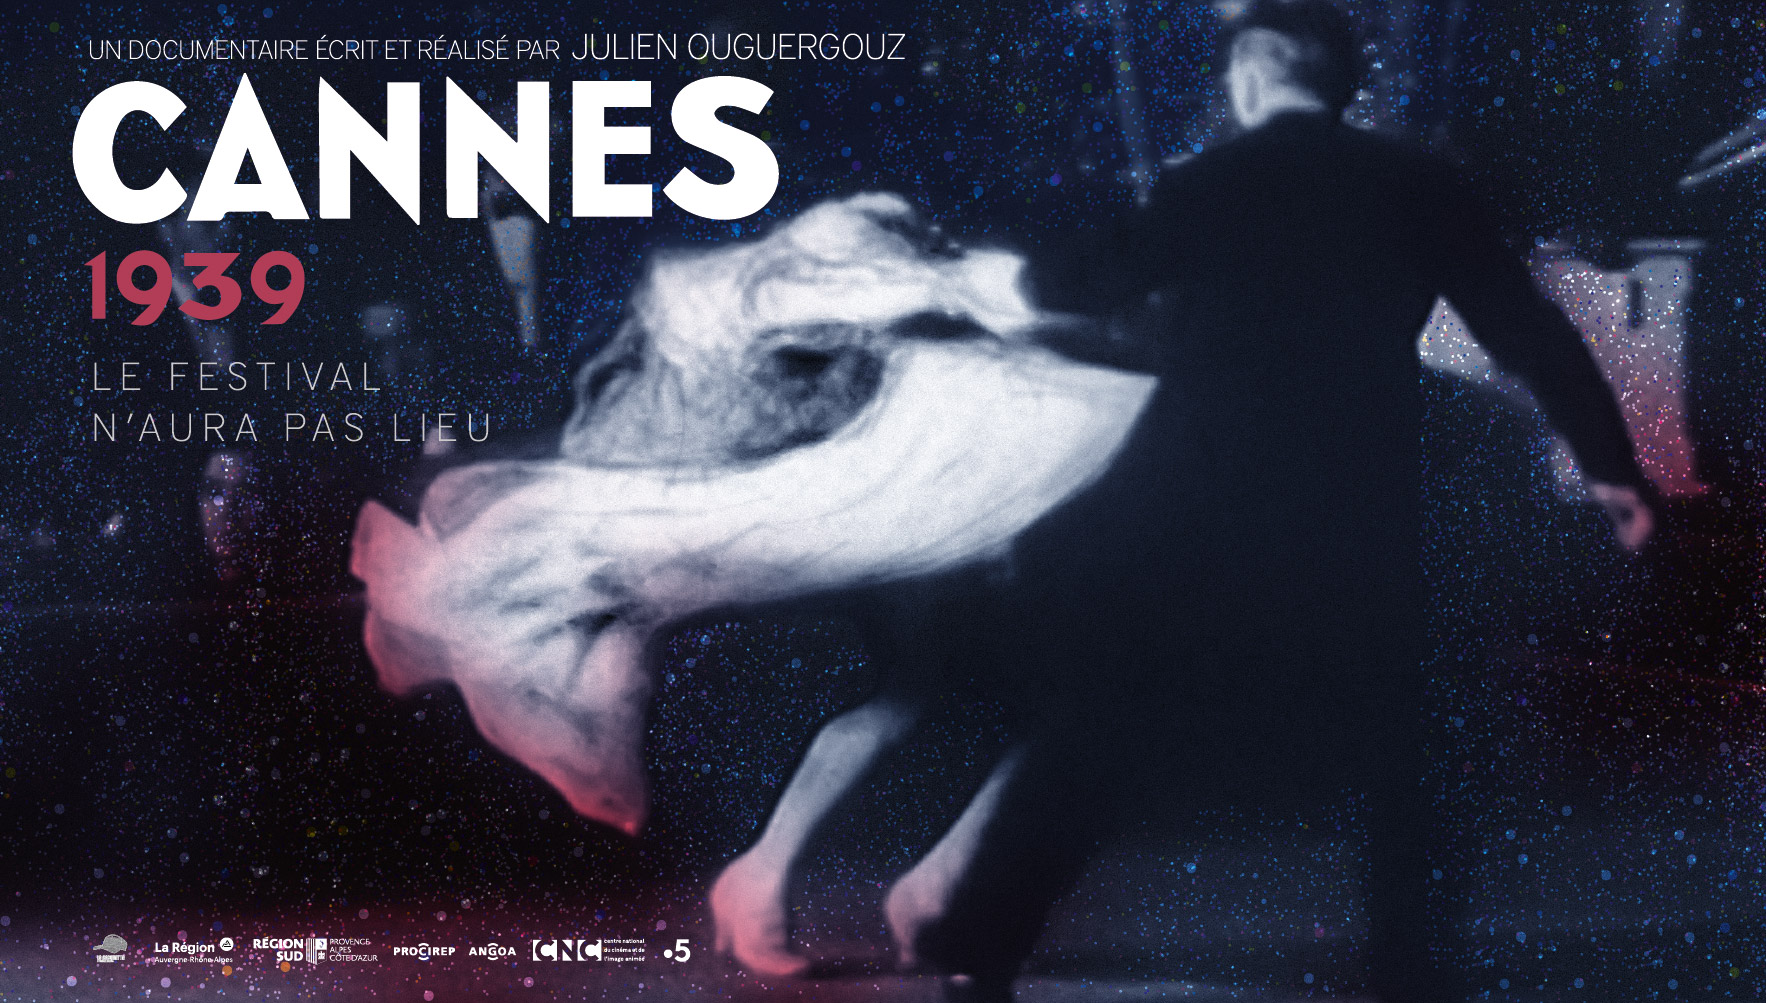 Cannes 1939, le festival n'aura pas lieu de Julien Ouguergouz